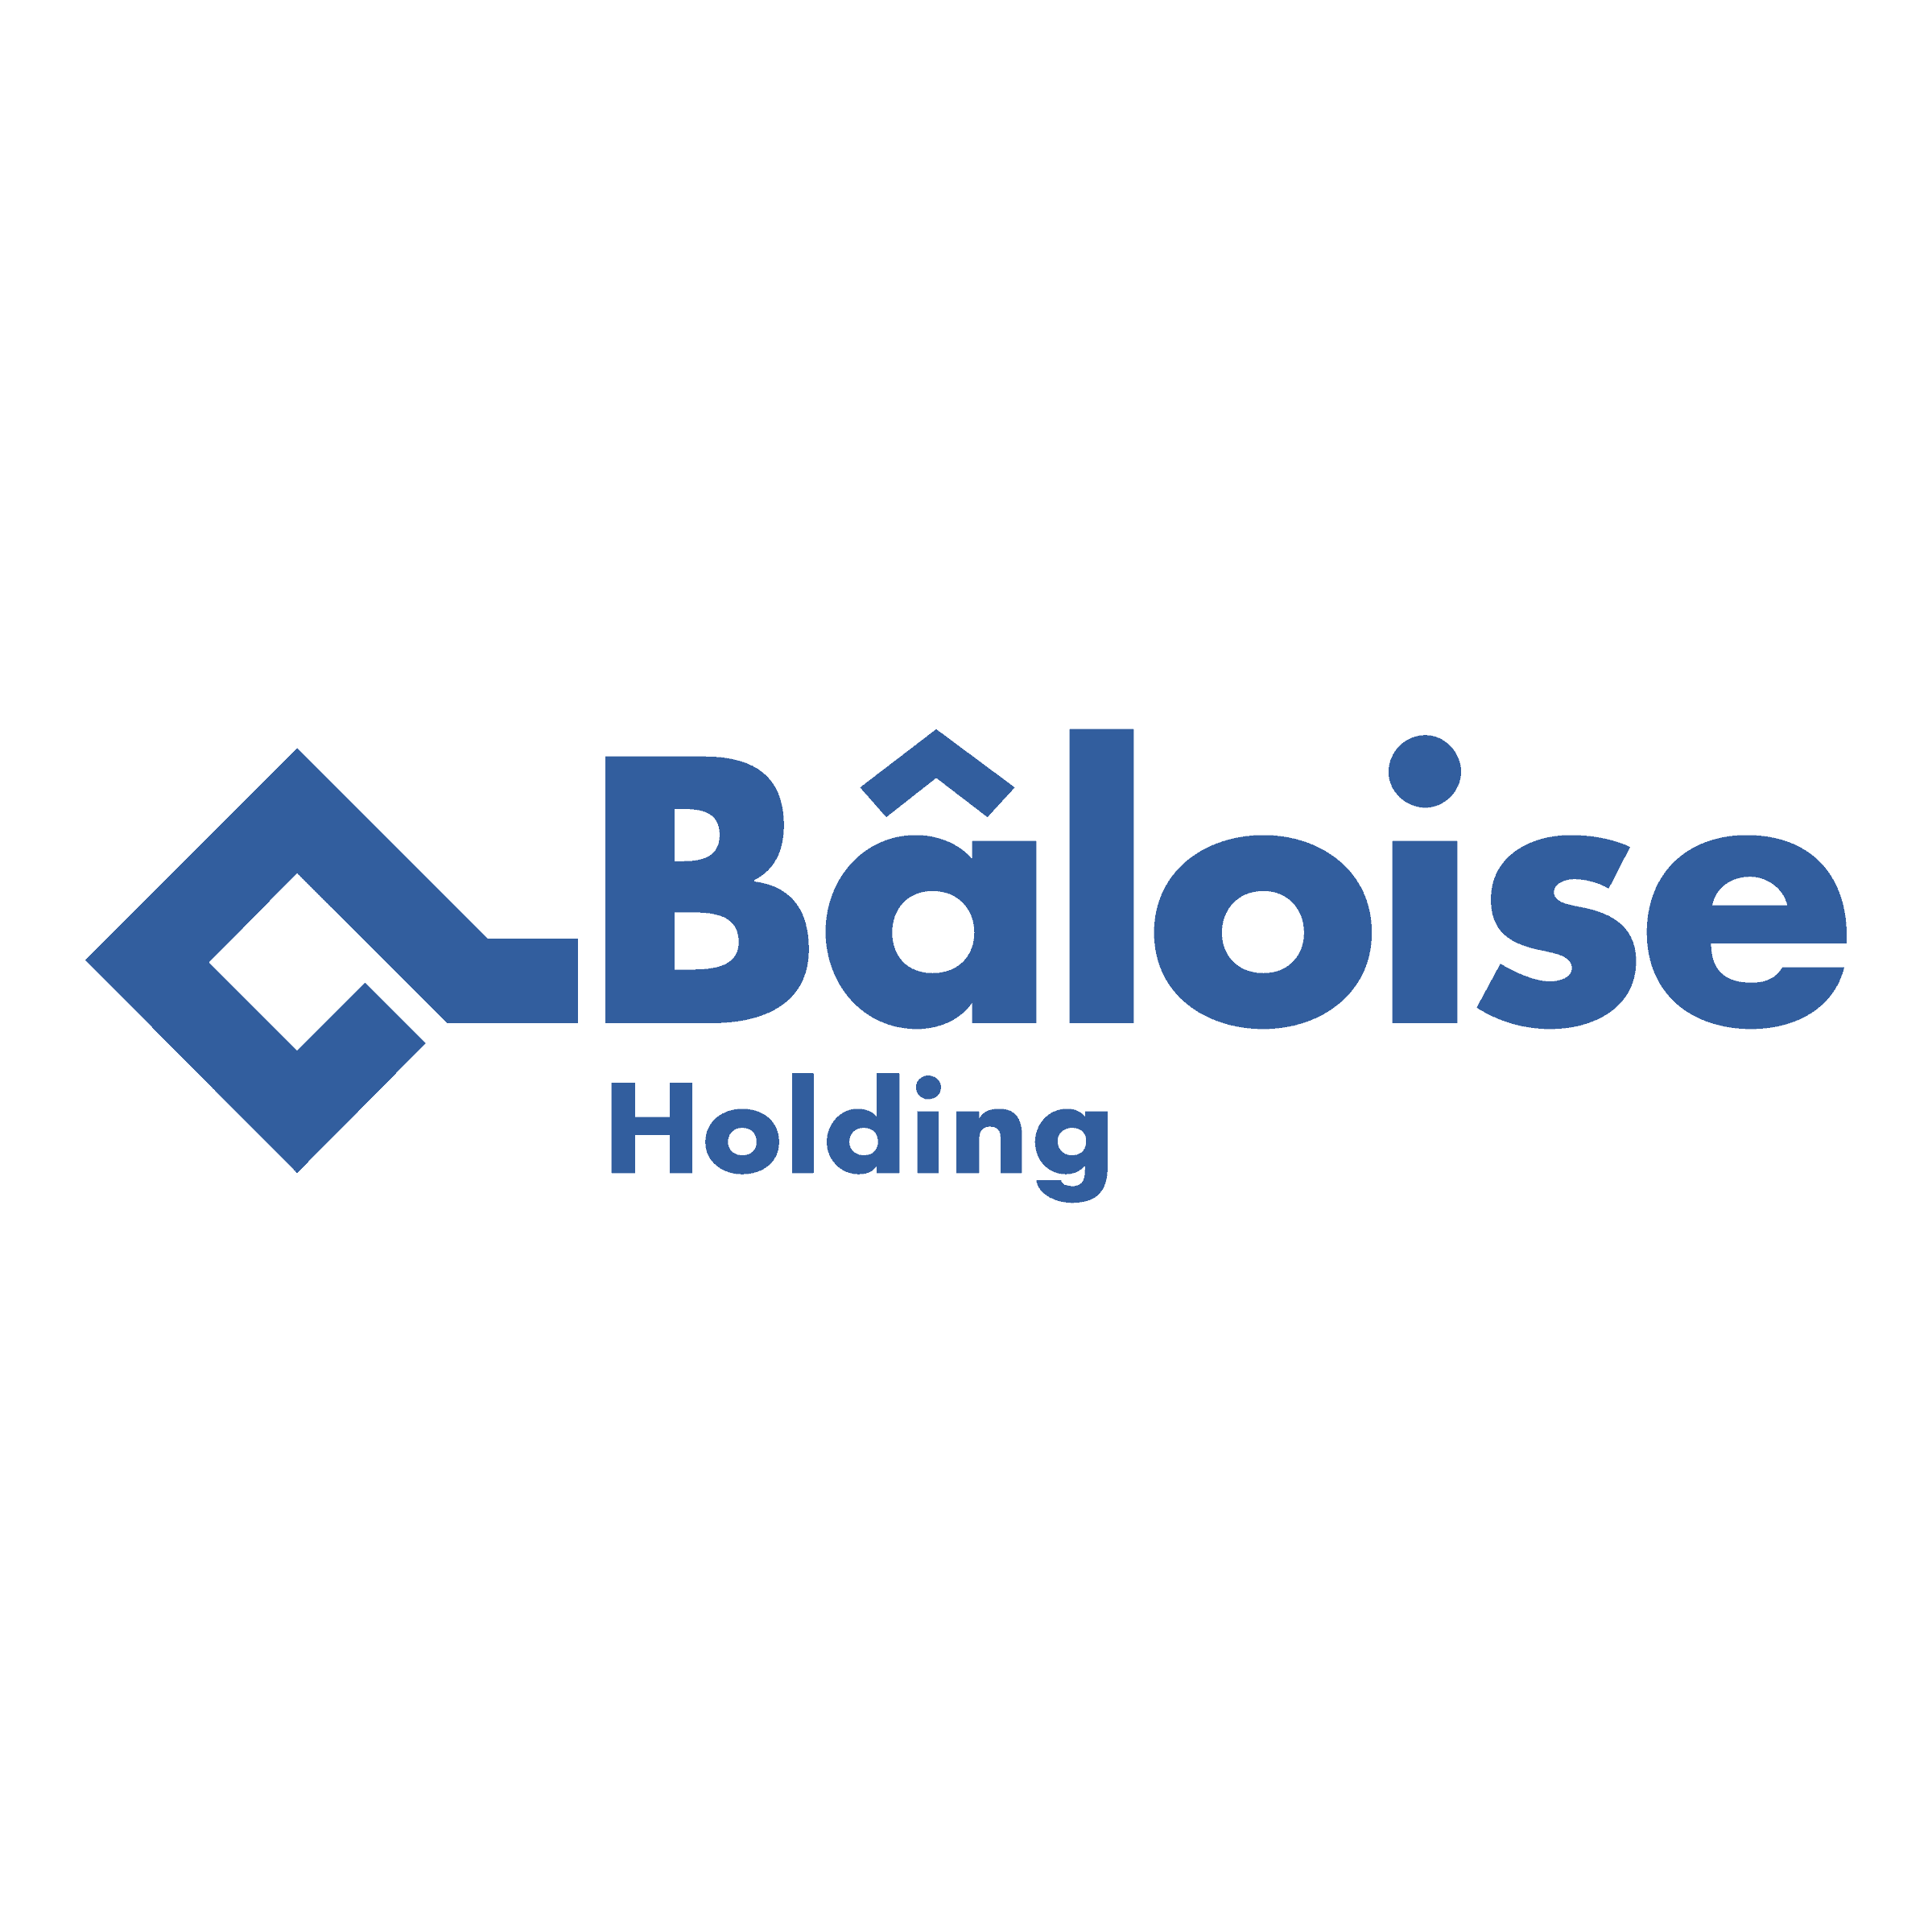 Baloise bank